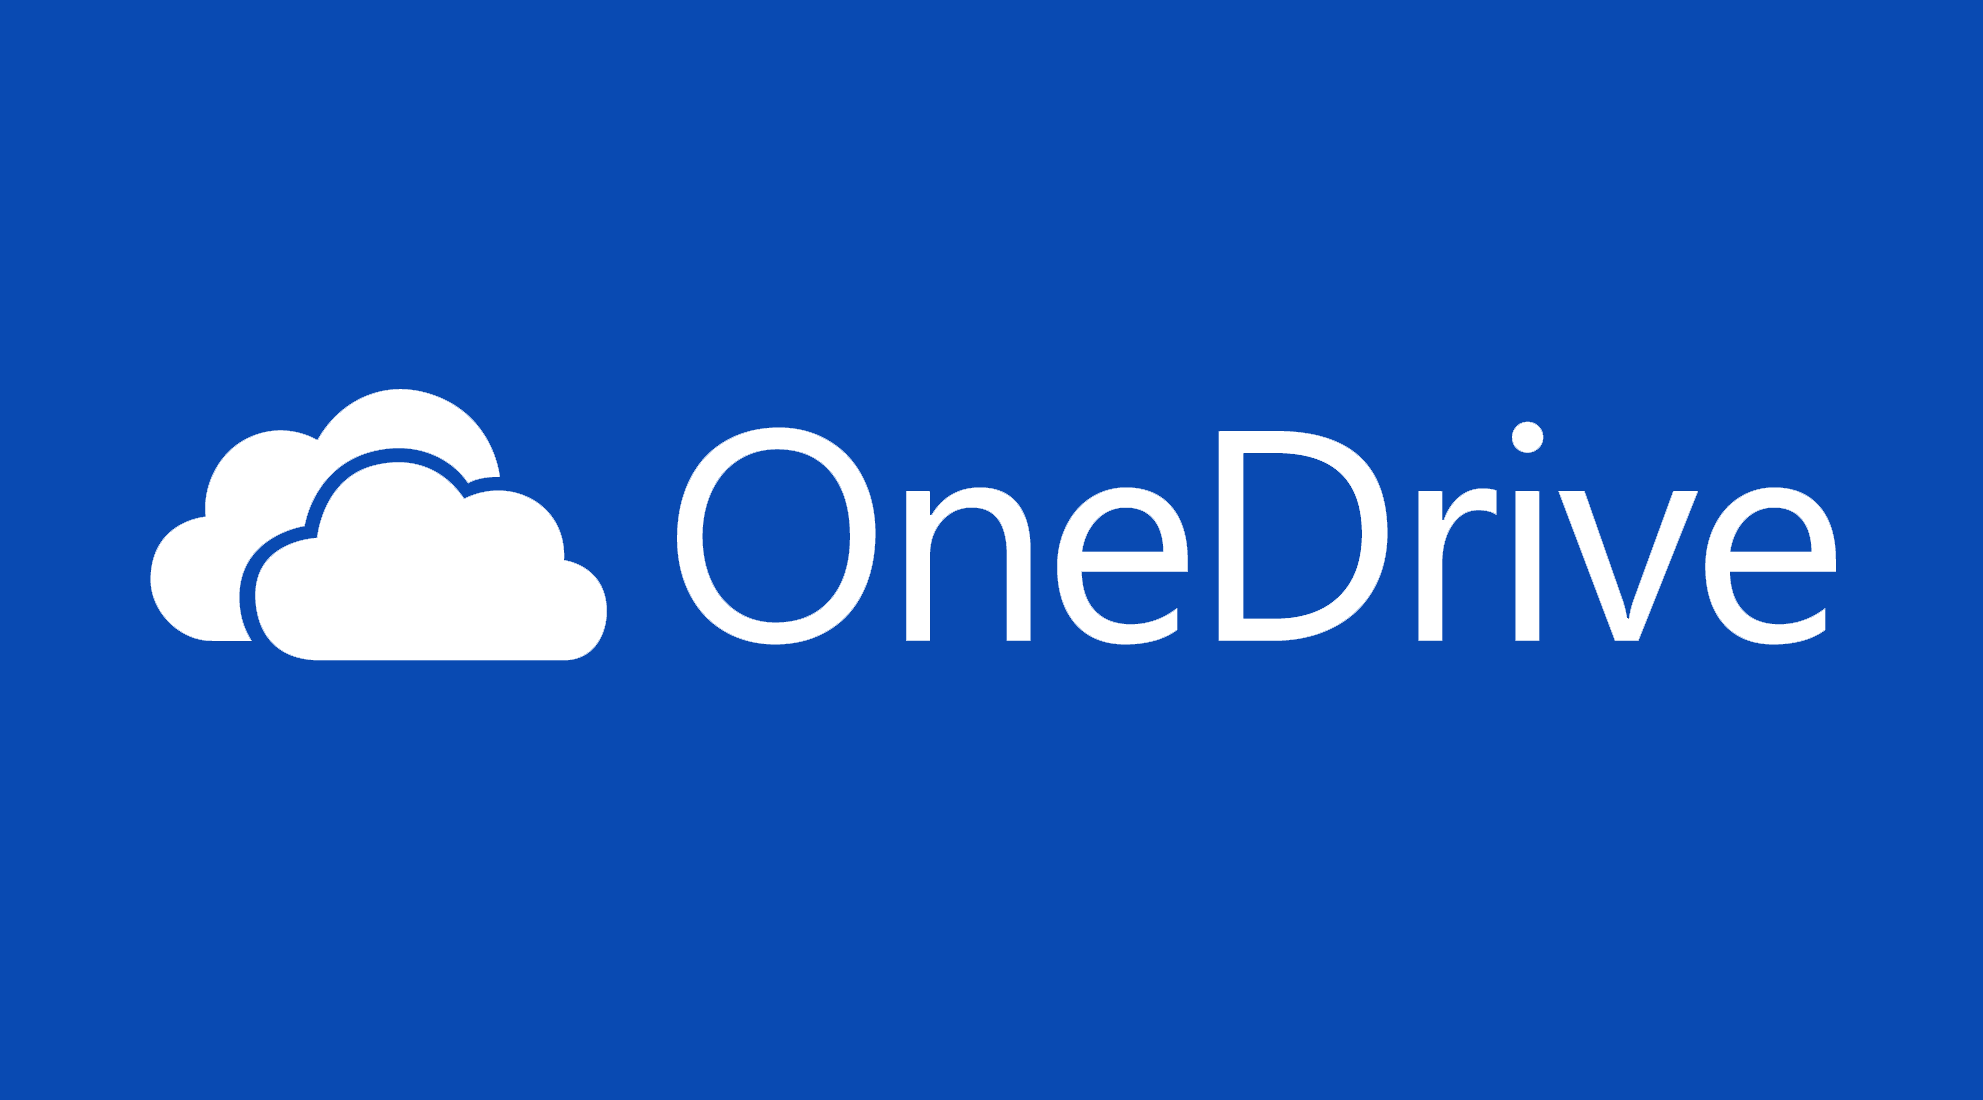 5 نصائح لتحقيق أقصى استفادة من خدمة OneDrive